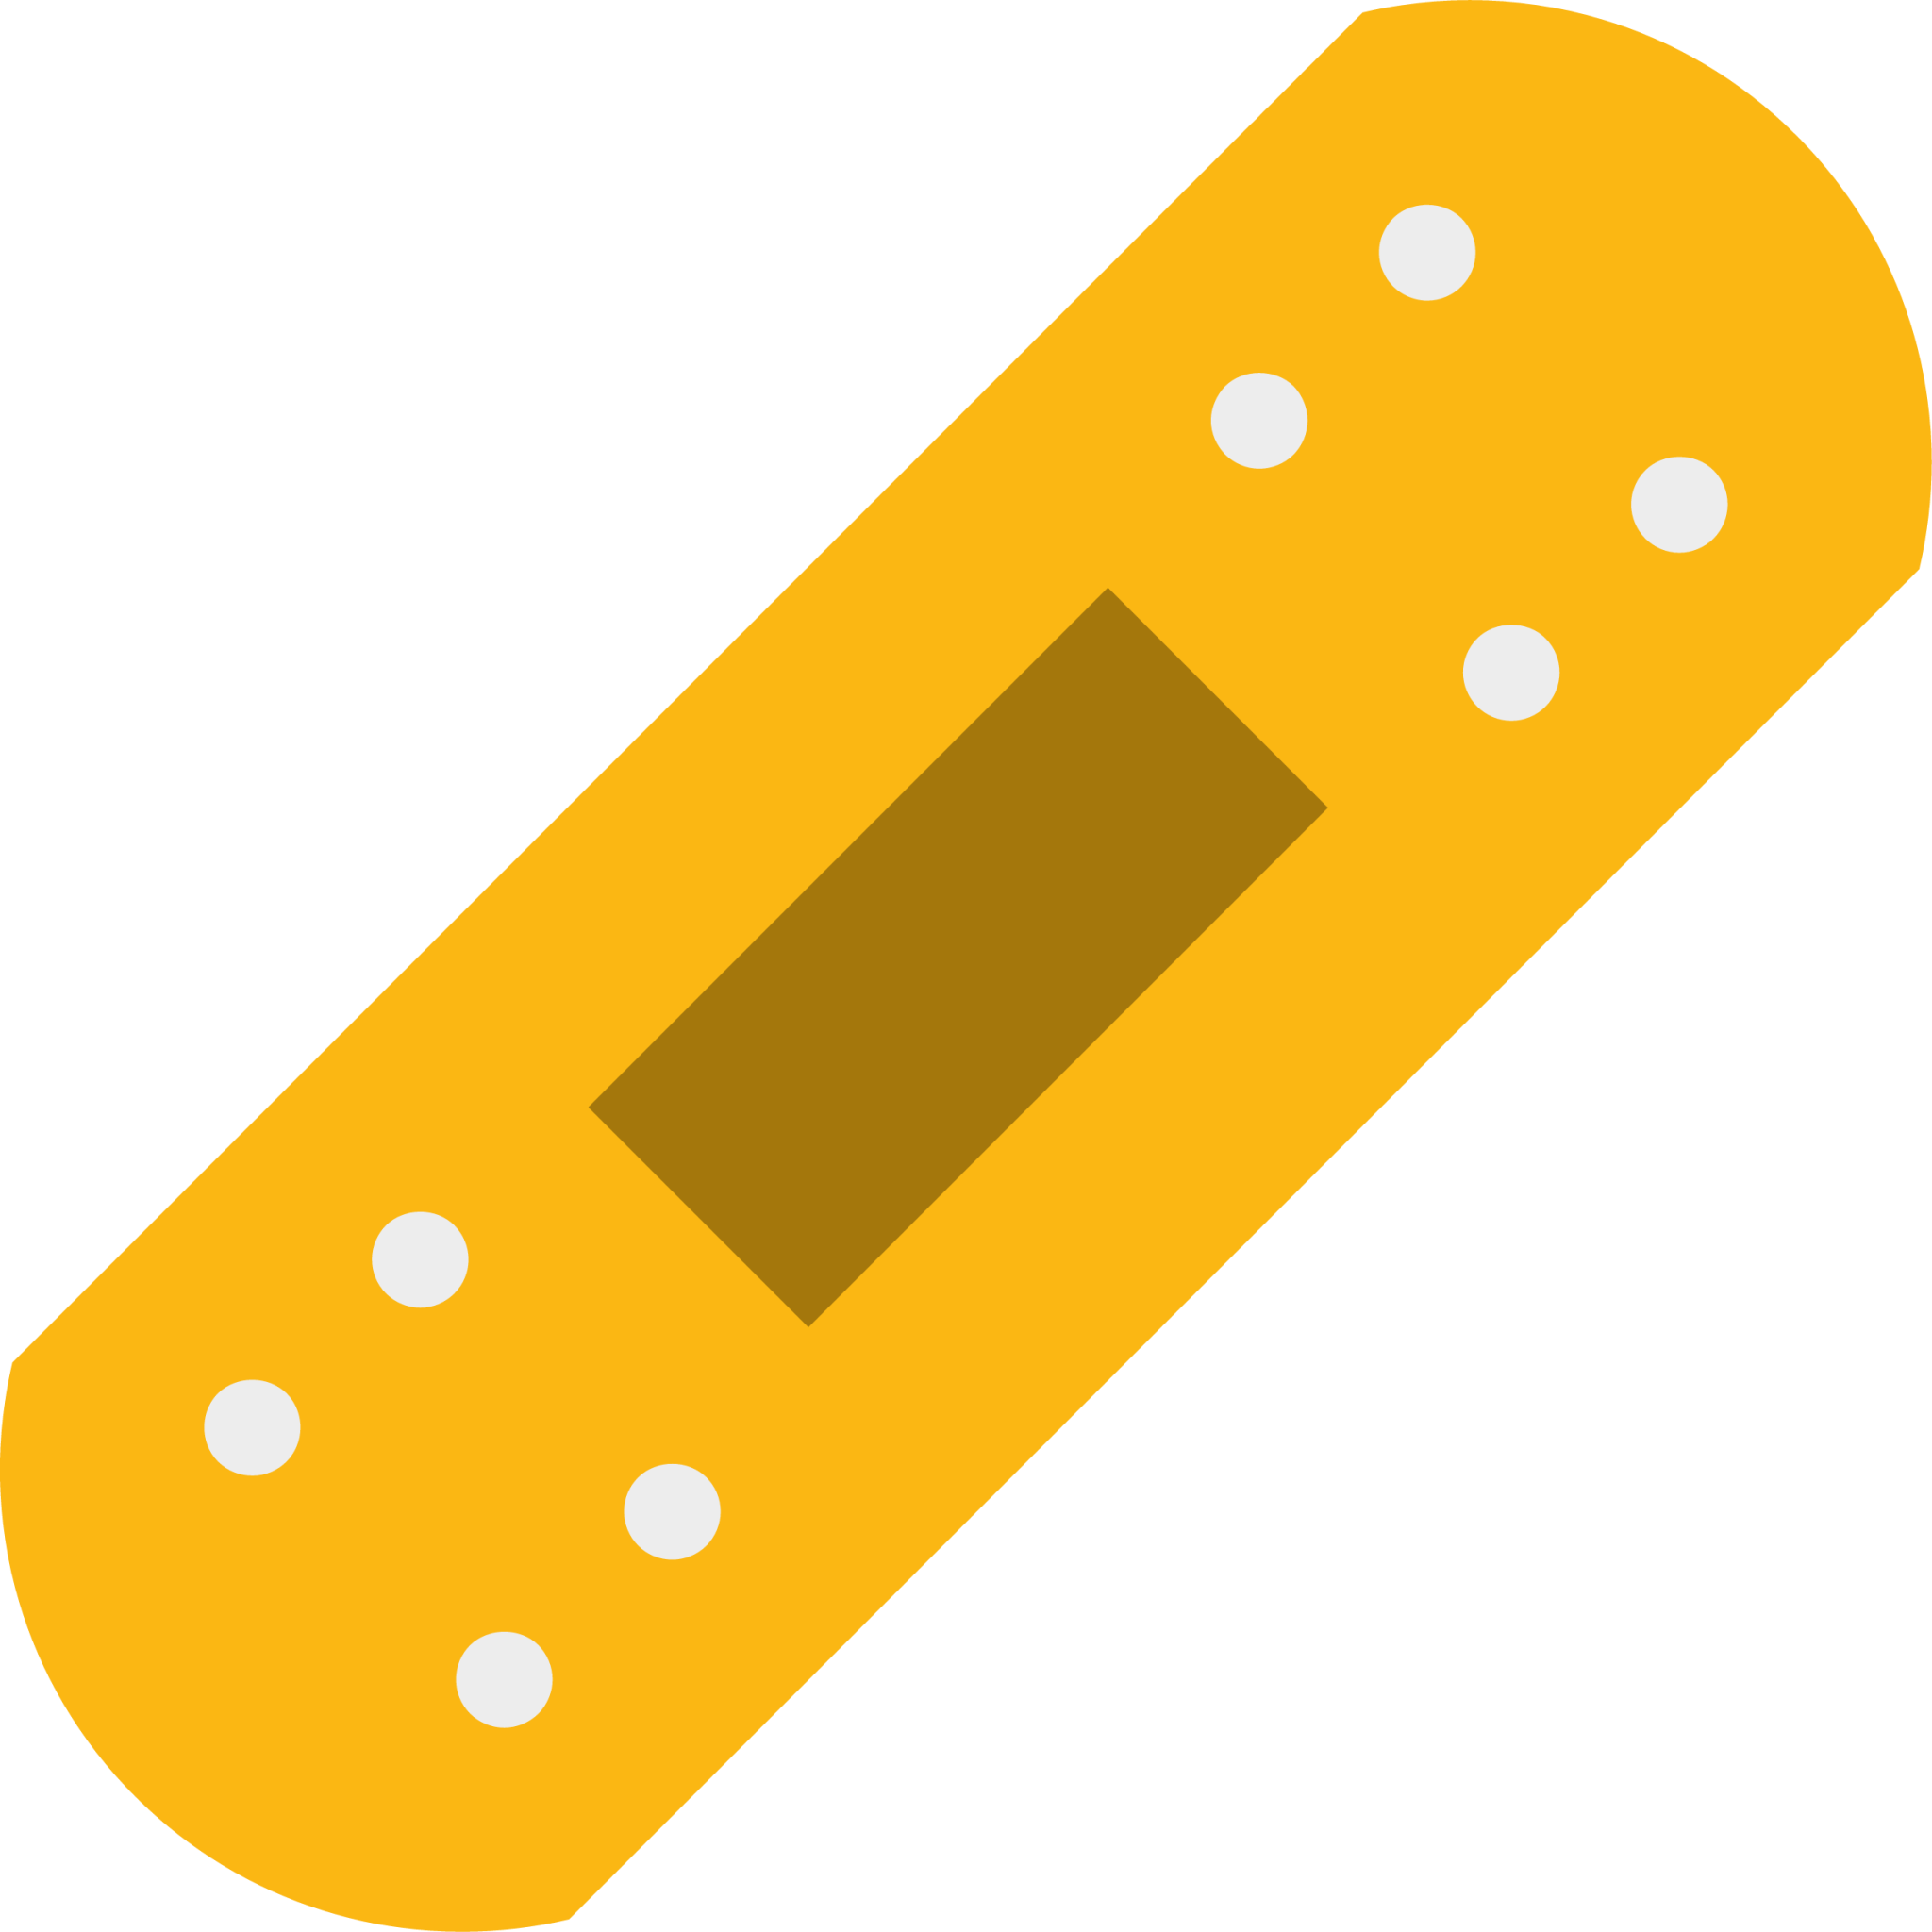 bandage illustration